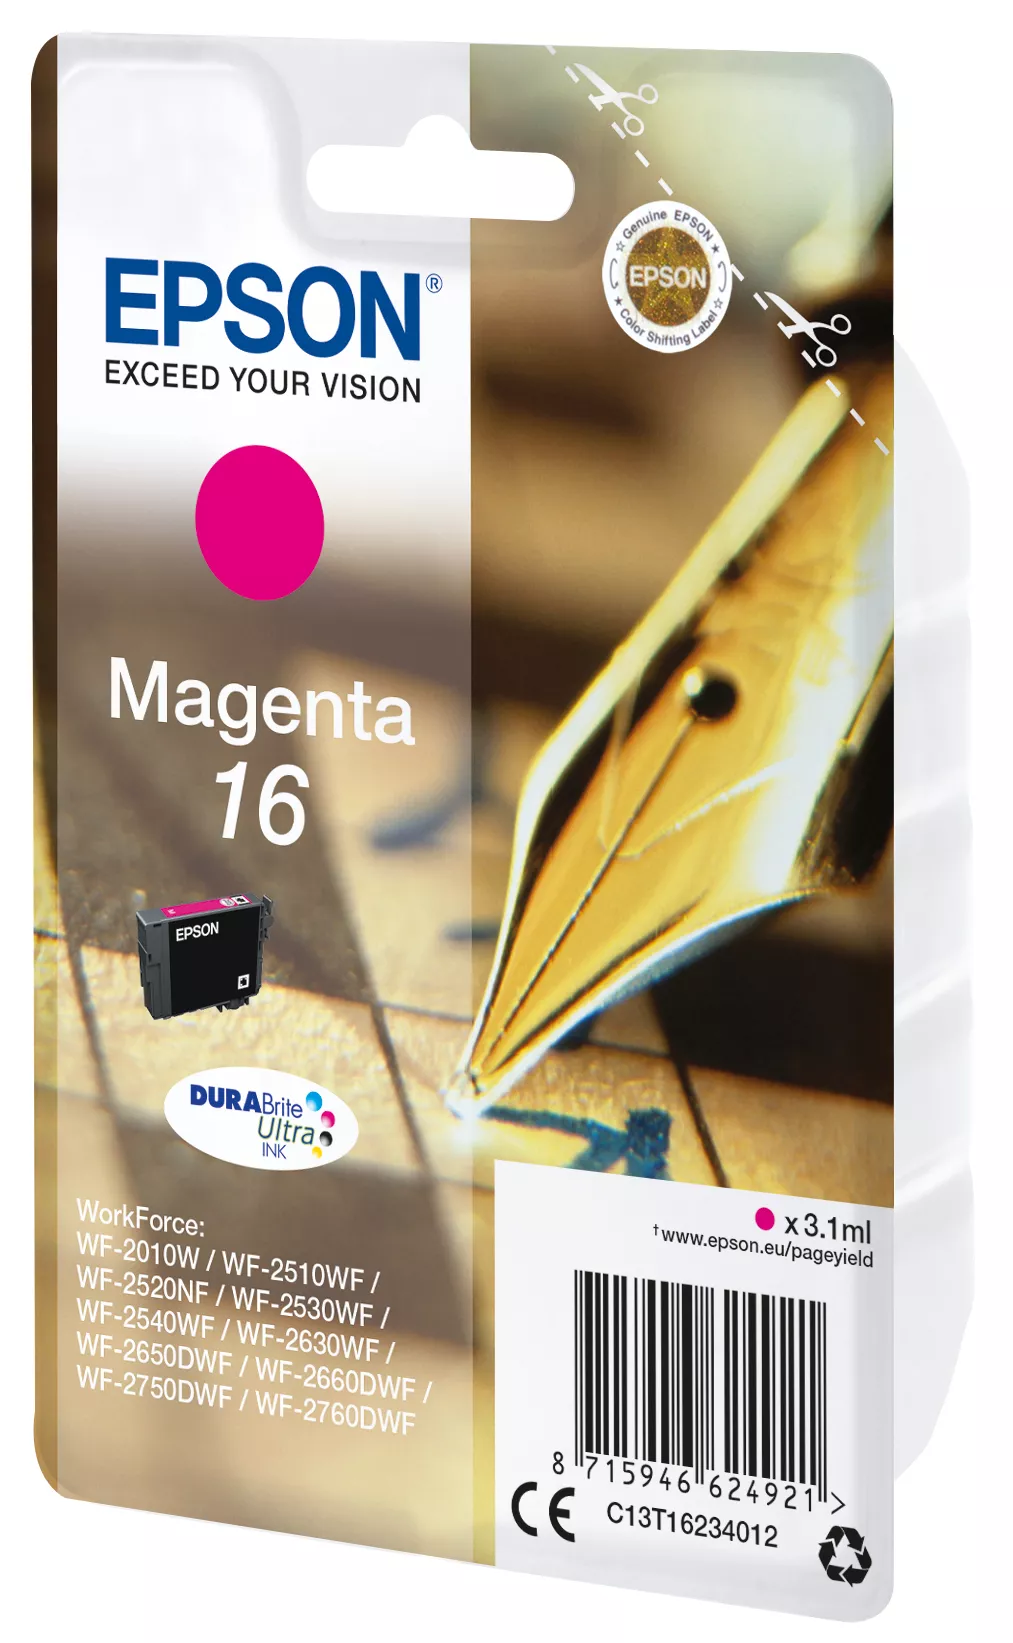 Vente EPSON 16 cartouche dencre magenta capacité standard 3.1ml Epson au meilleur prix - visuel 2